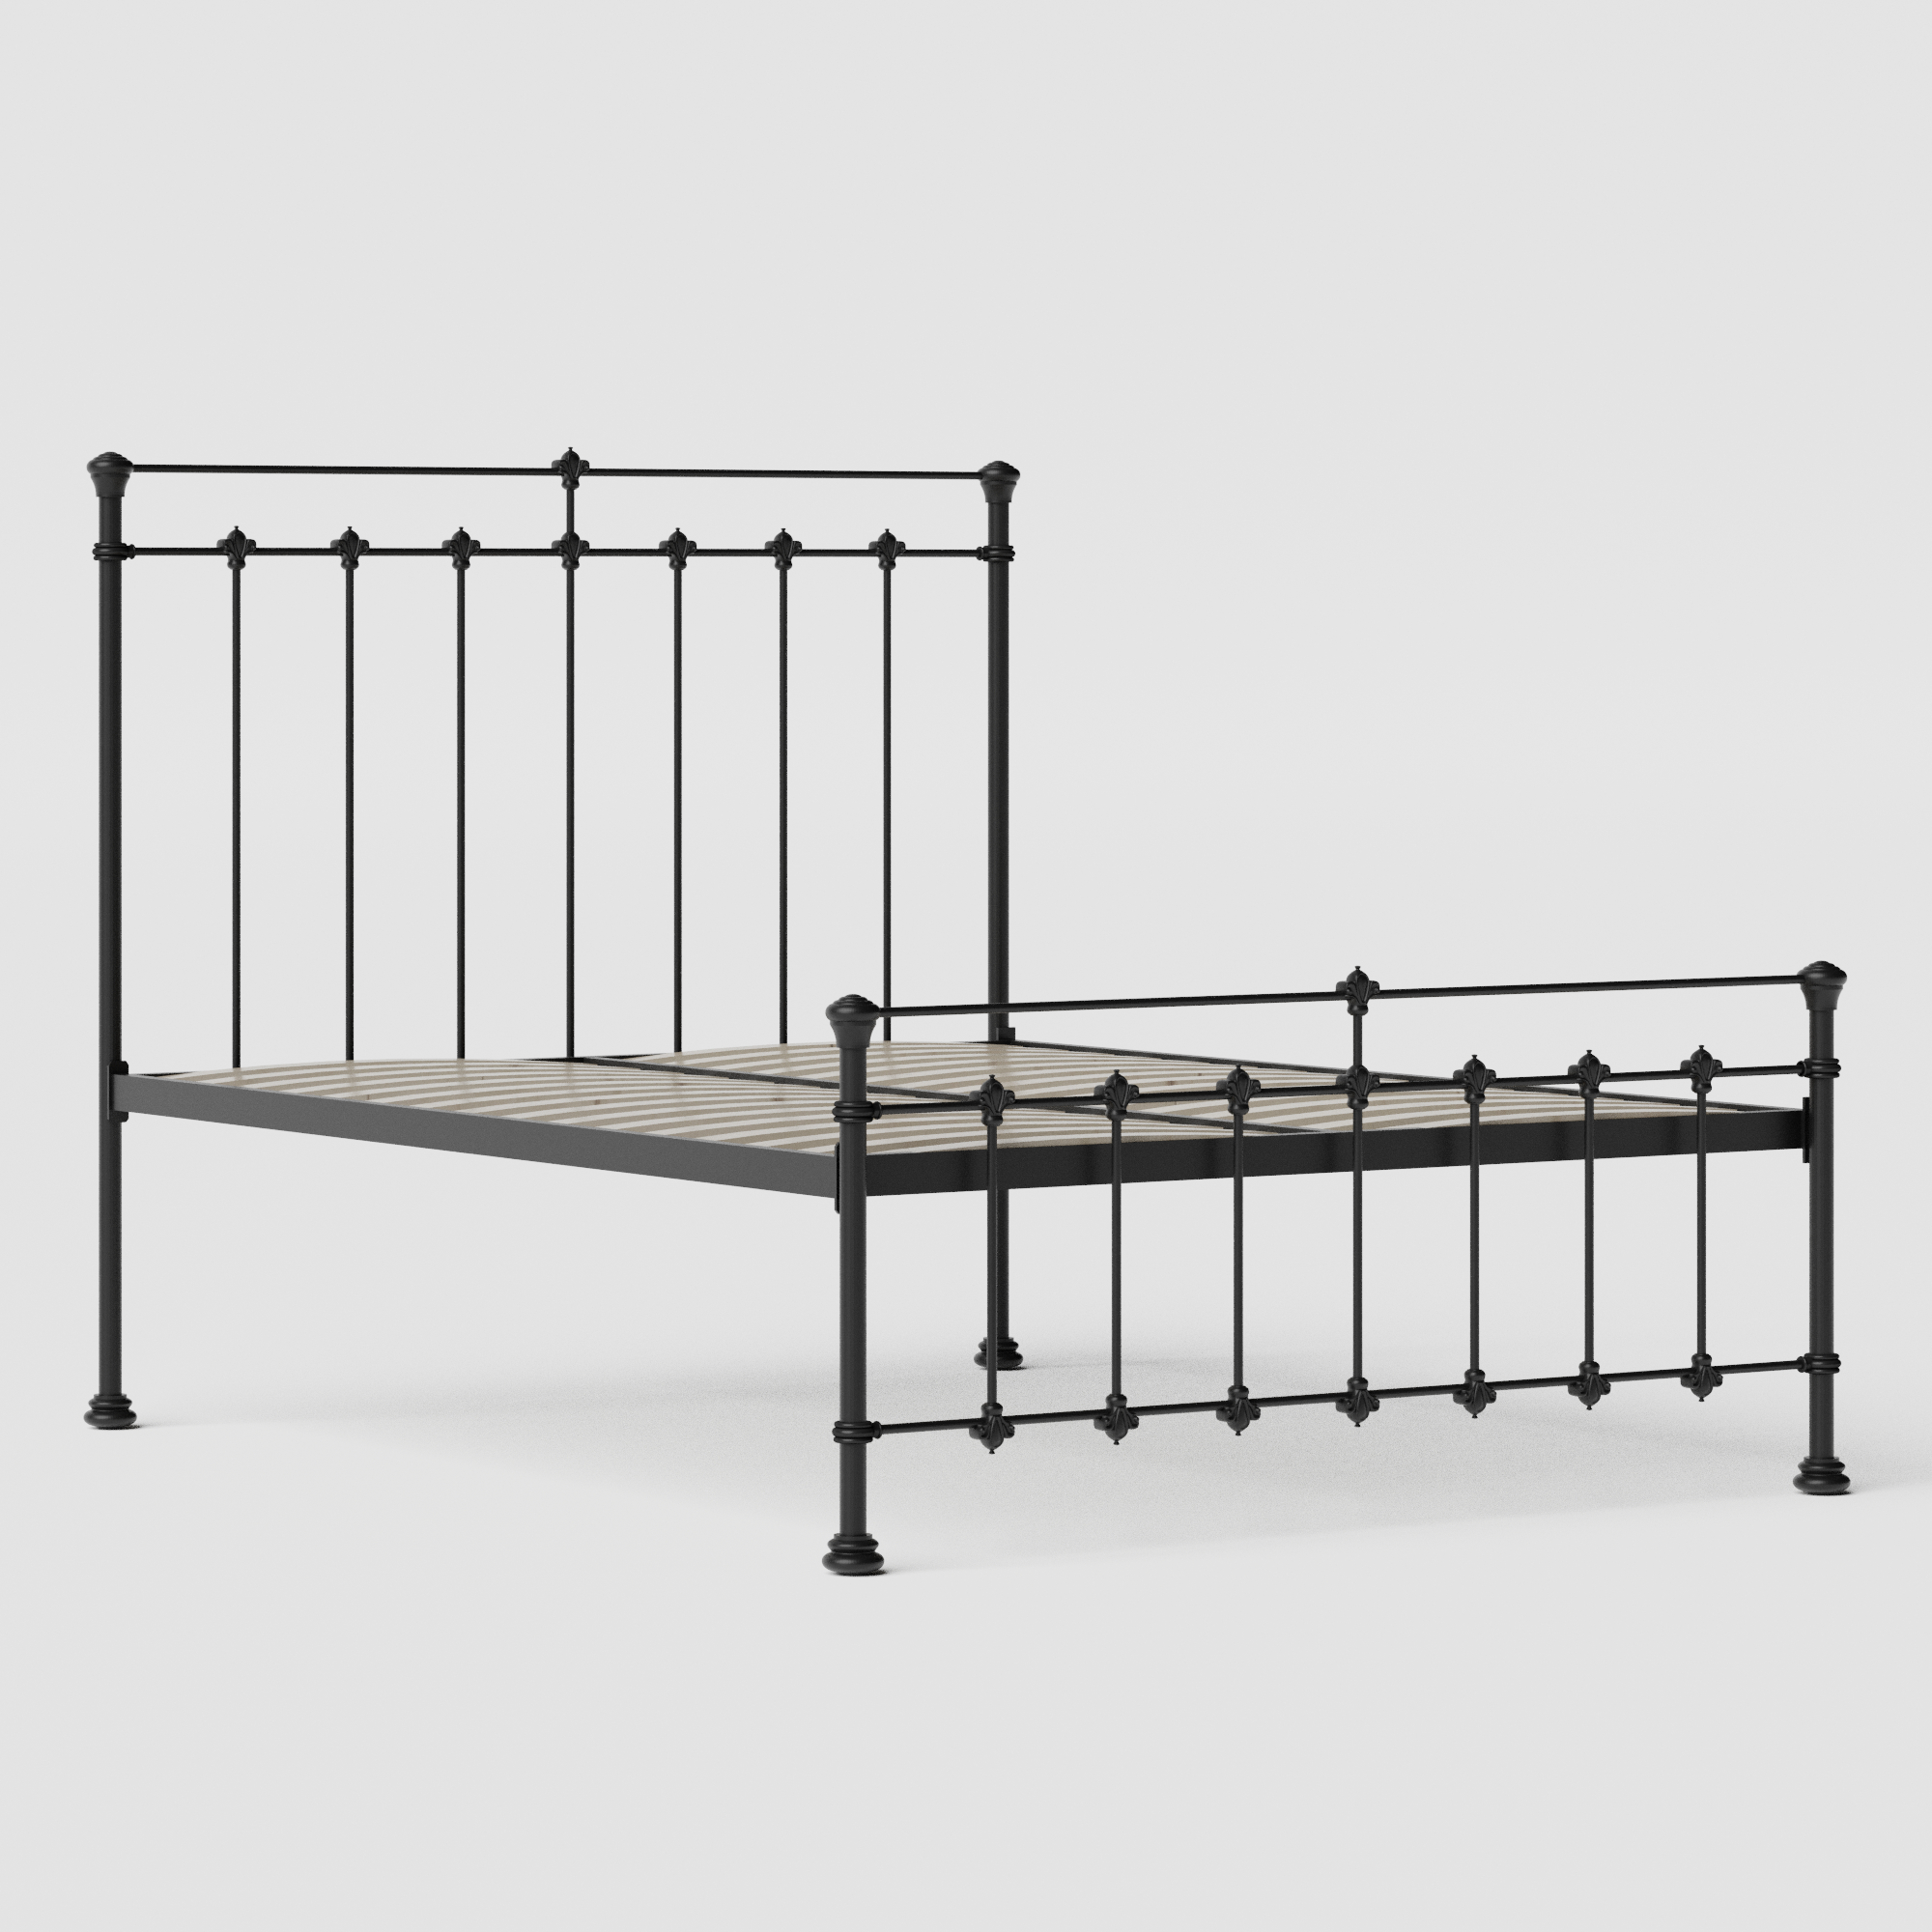 Edwardian iron/metal bed in black